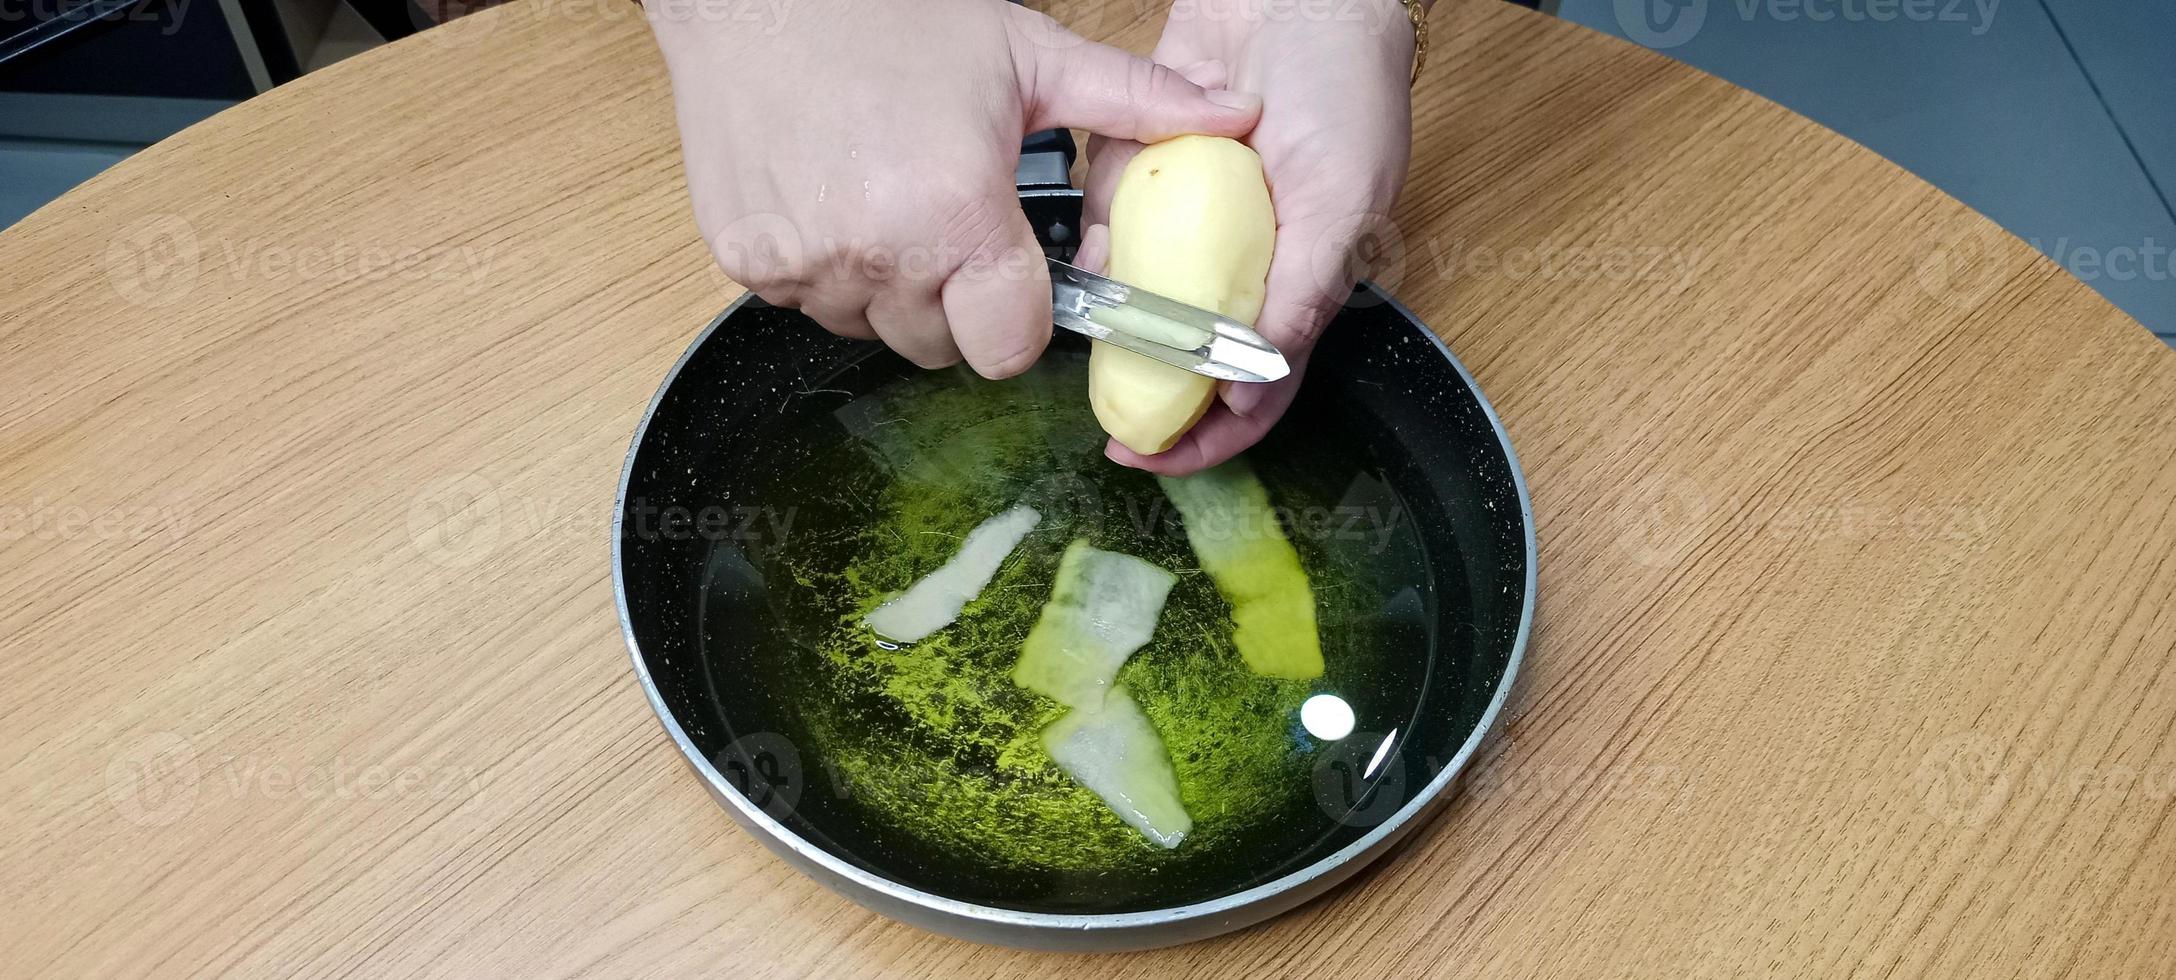 aardappel schillen in olie voor maken werkwijze van aardappel chips, aal chips foto